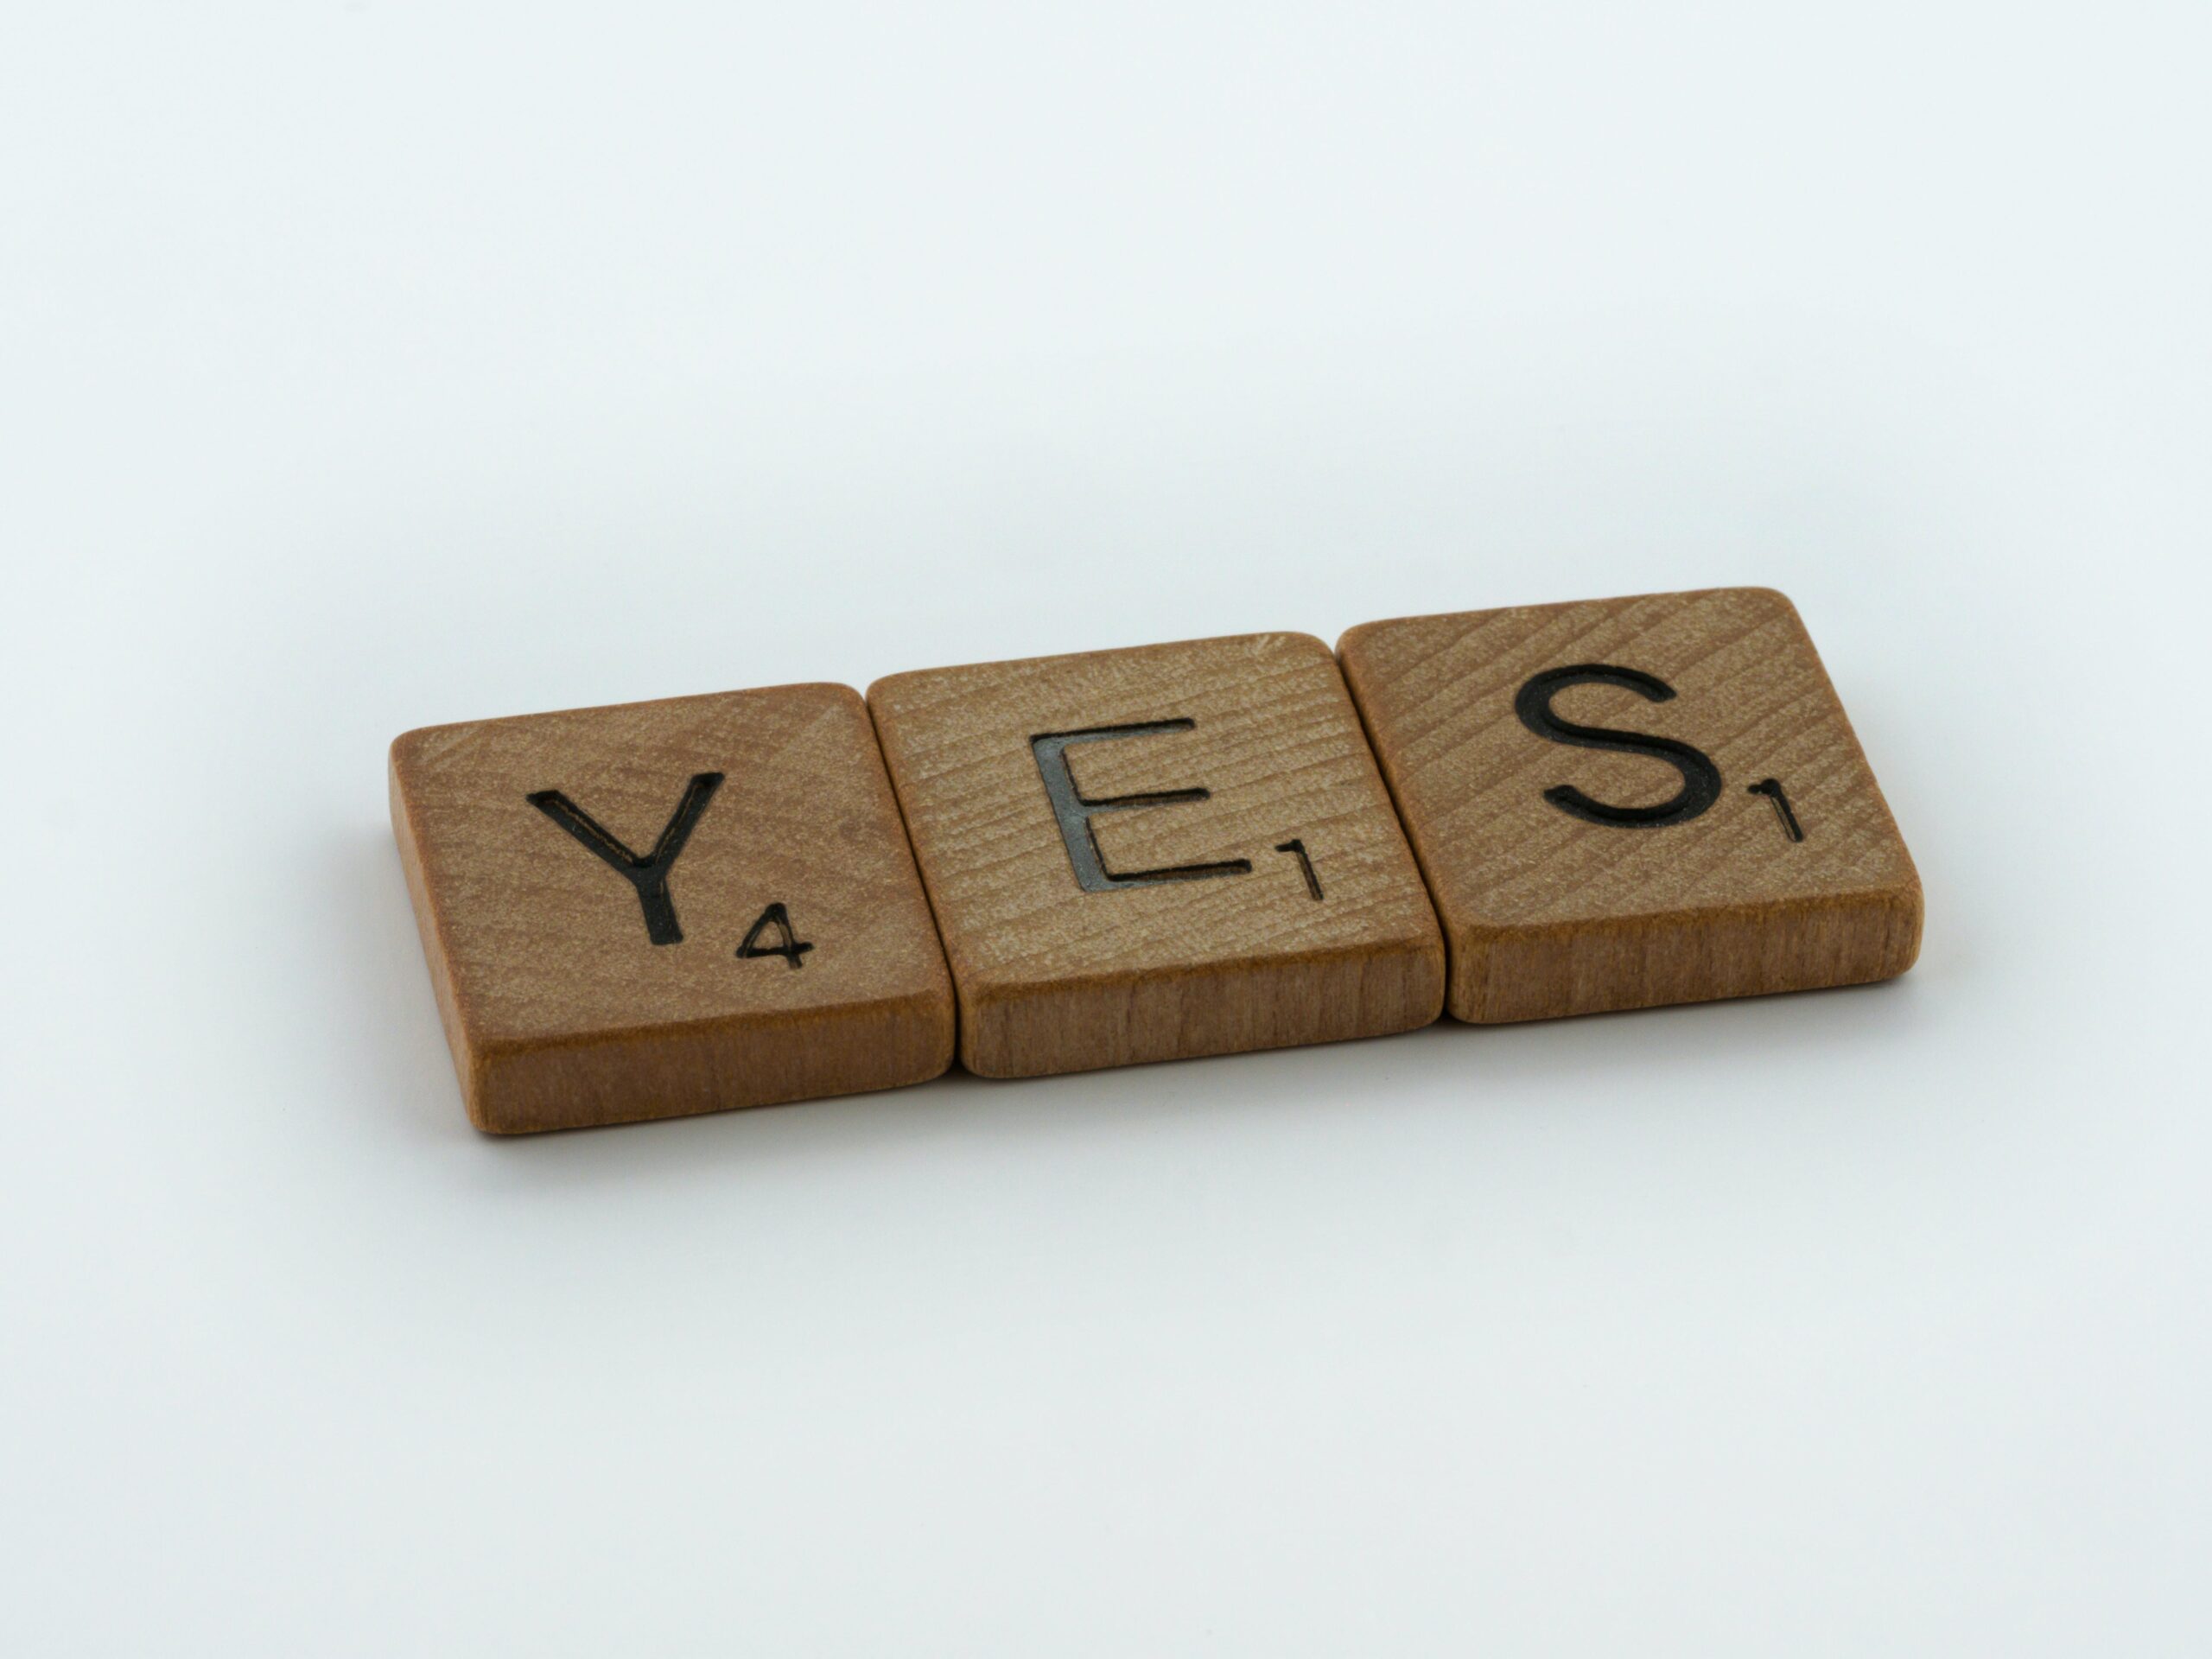 Drei Scrabble-Steine aus Holz bilden das Wort "Yes".